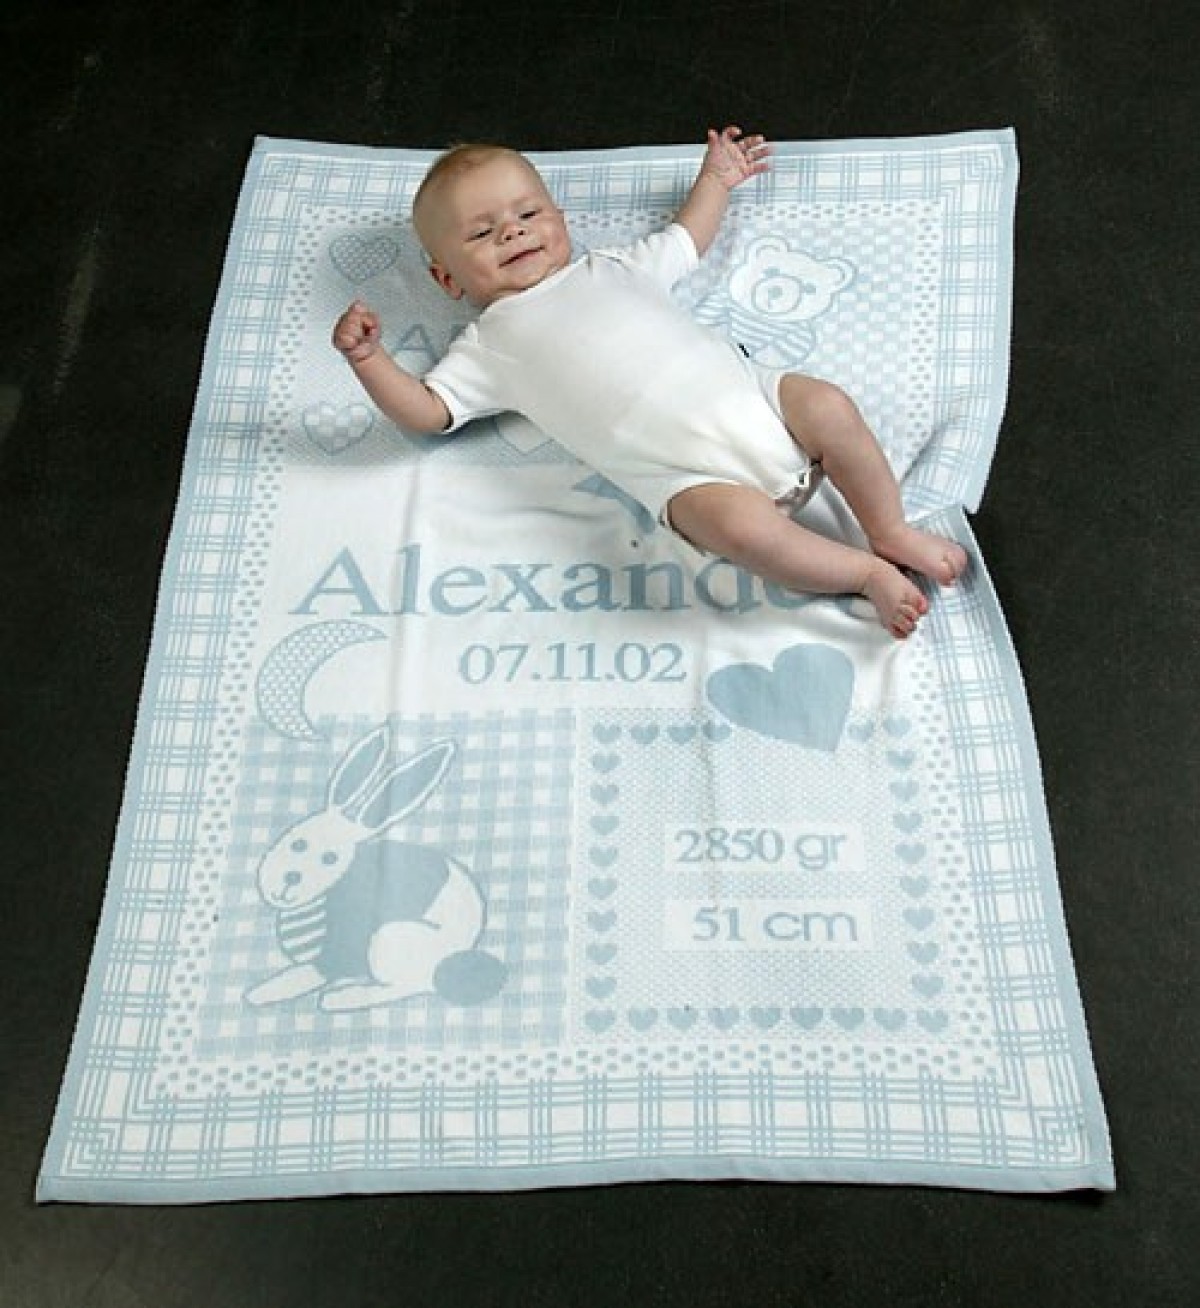 Mantas de bebé personalizadas, manta de bebé personalizada con nombre  personalizado, mantas de bebé personalizadas, mantas de bebé niño  personalizadas